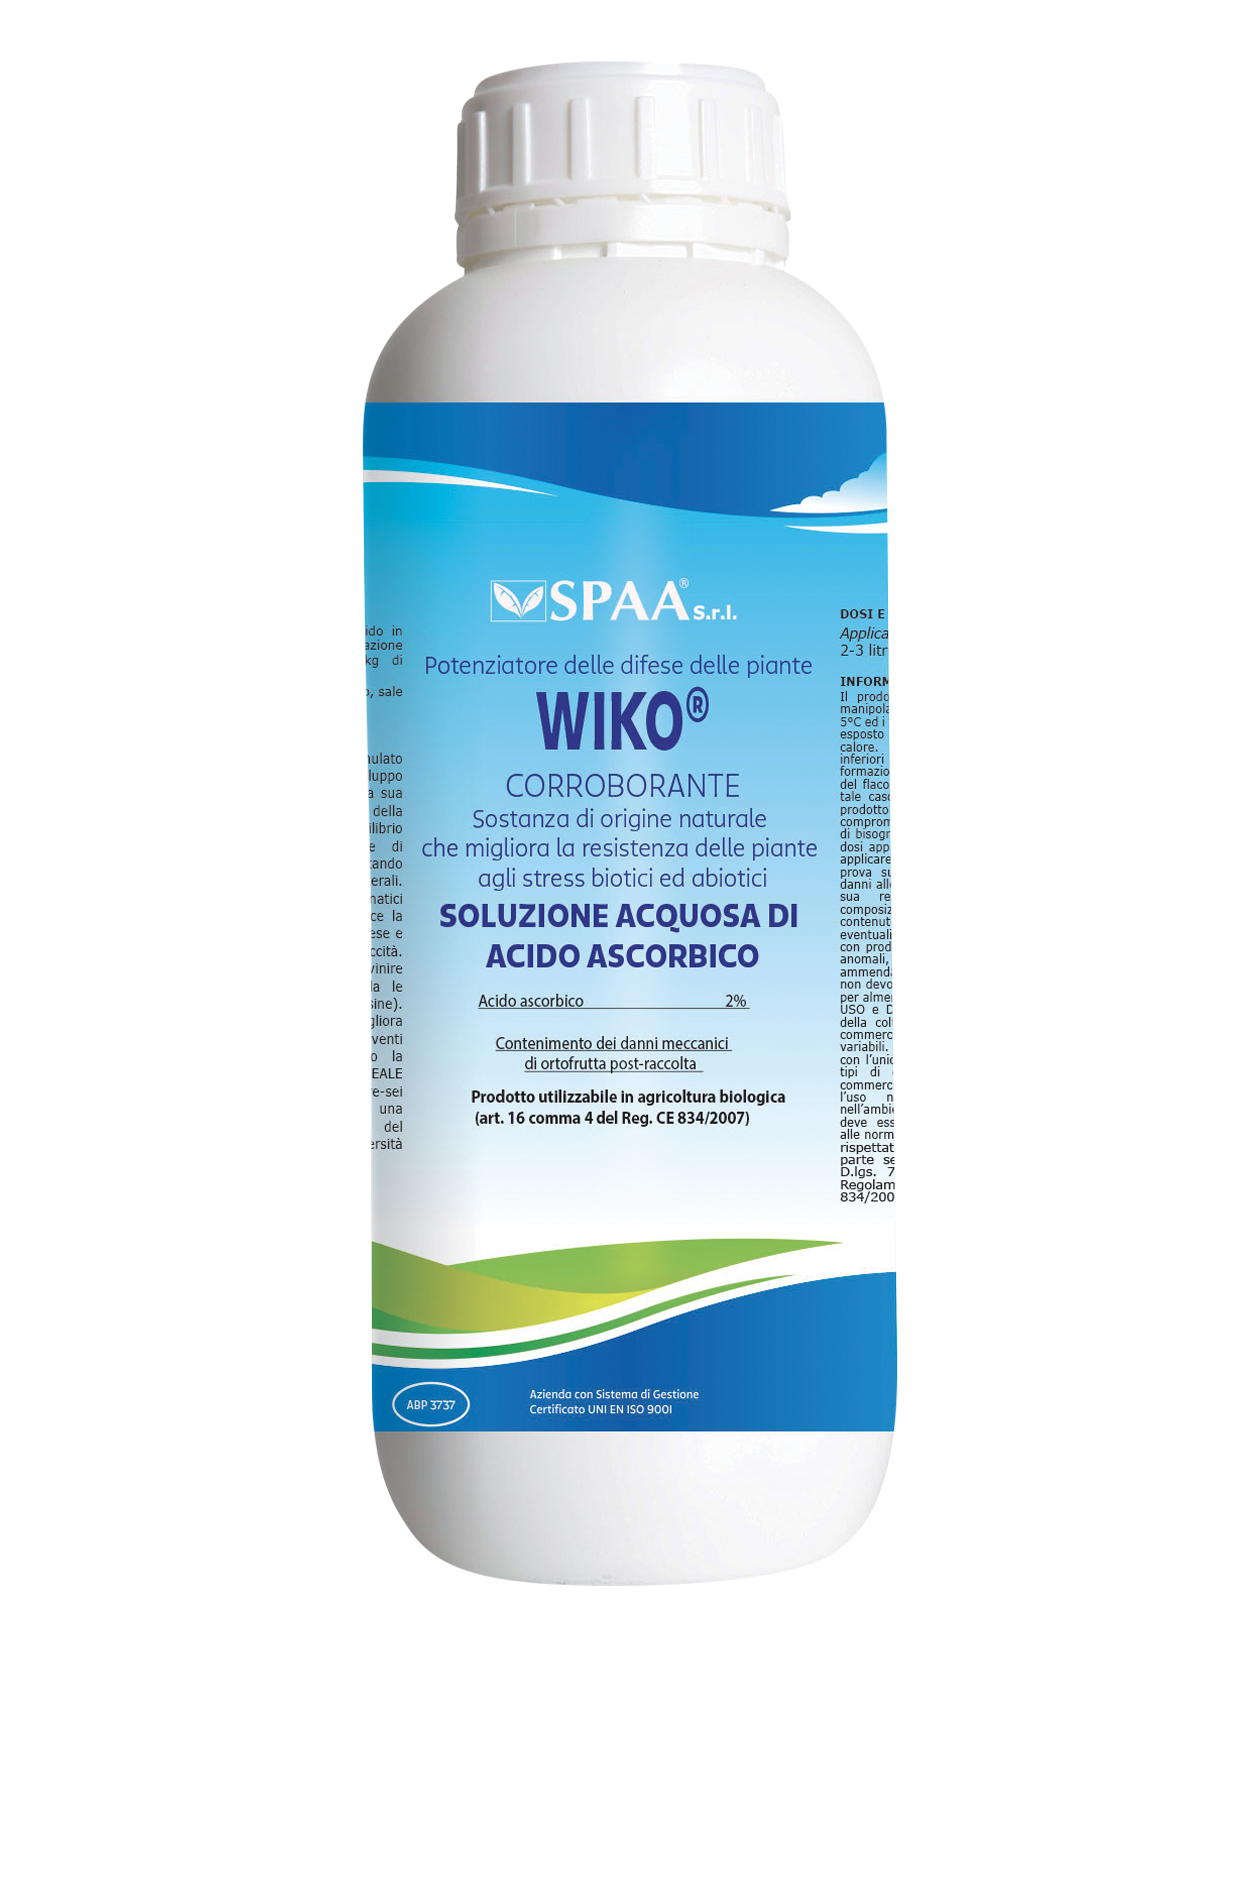 WIKO® Soluzione acquosa di acido ascorbico